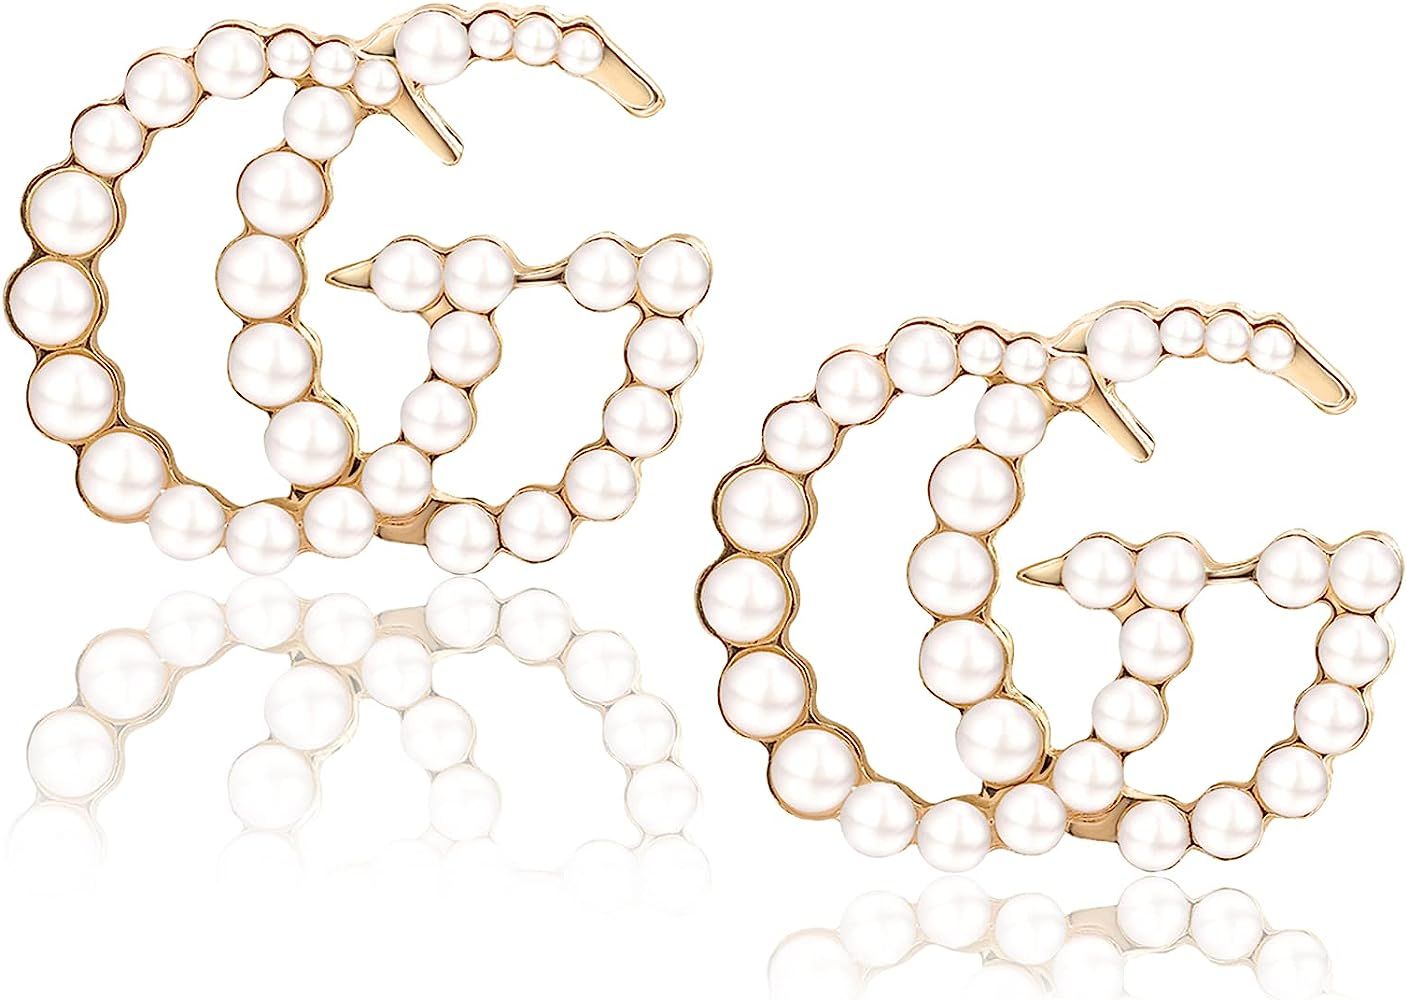 Initial G Earrings for Women - Sterling Silver Hypoallergenic Faux Pearl Letter G Stud Earrings F... | Amazon (US)